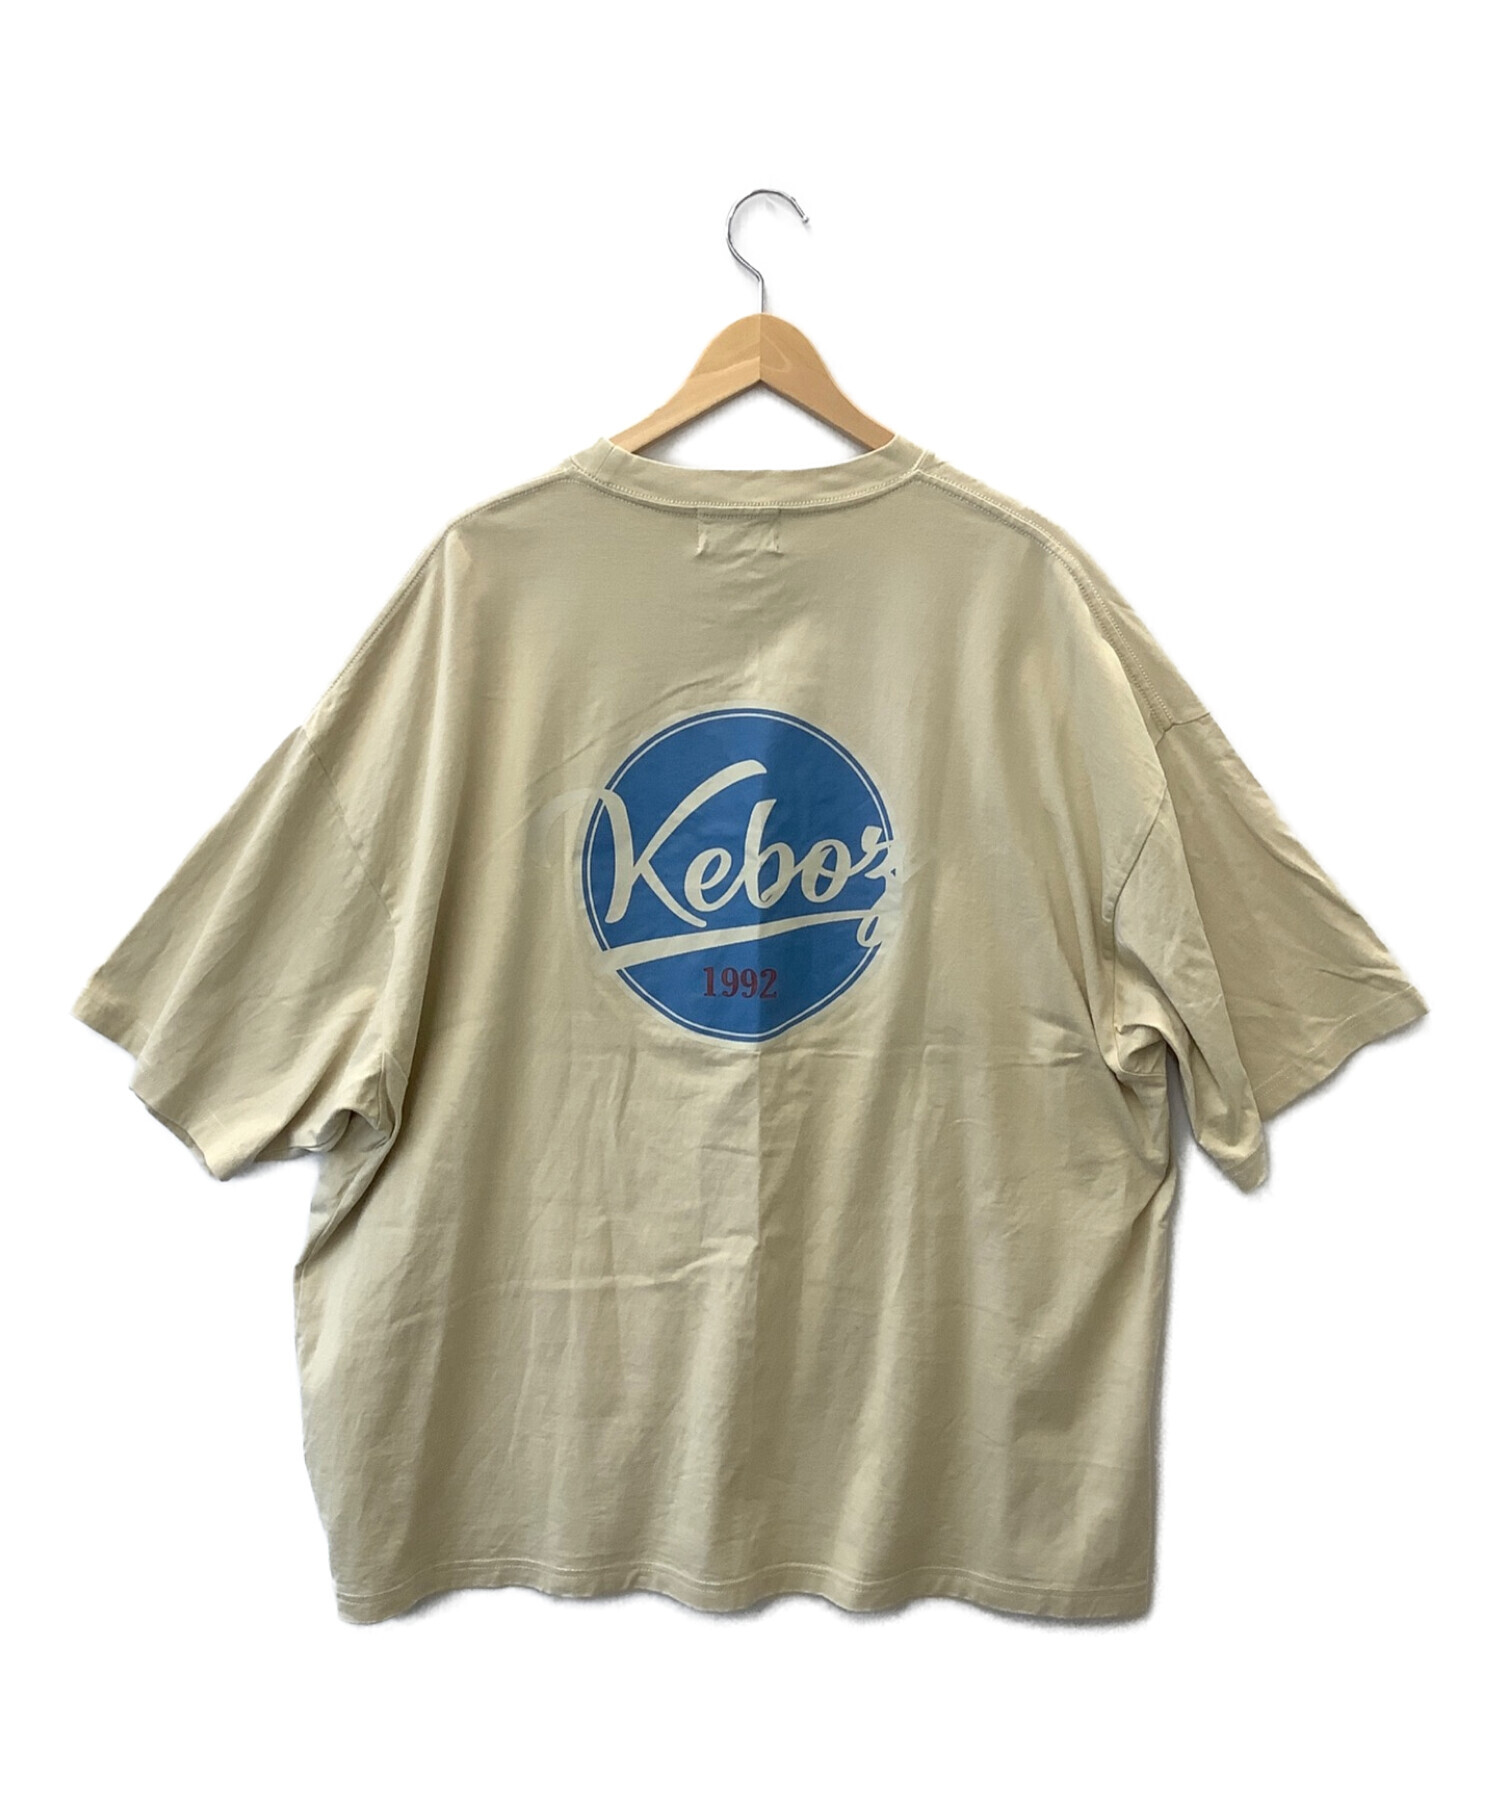 KEBOZ (ケボズ) バックプリントTシャツ ベージュ サイズ:XL